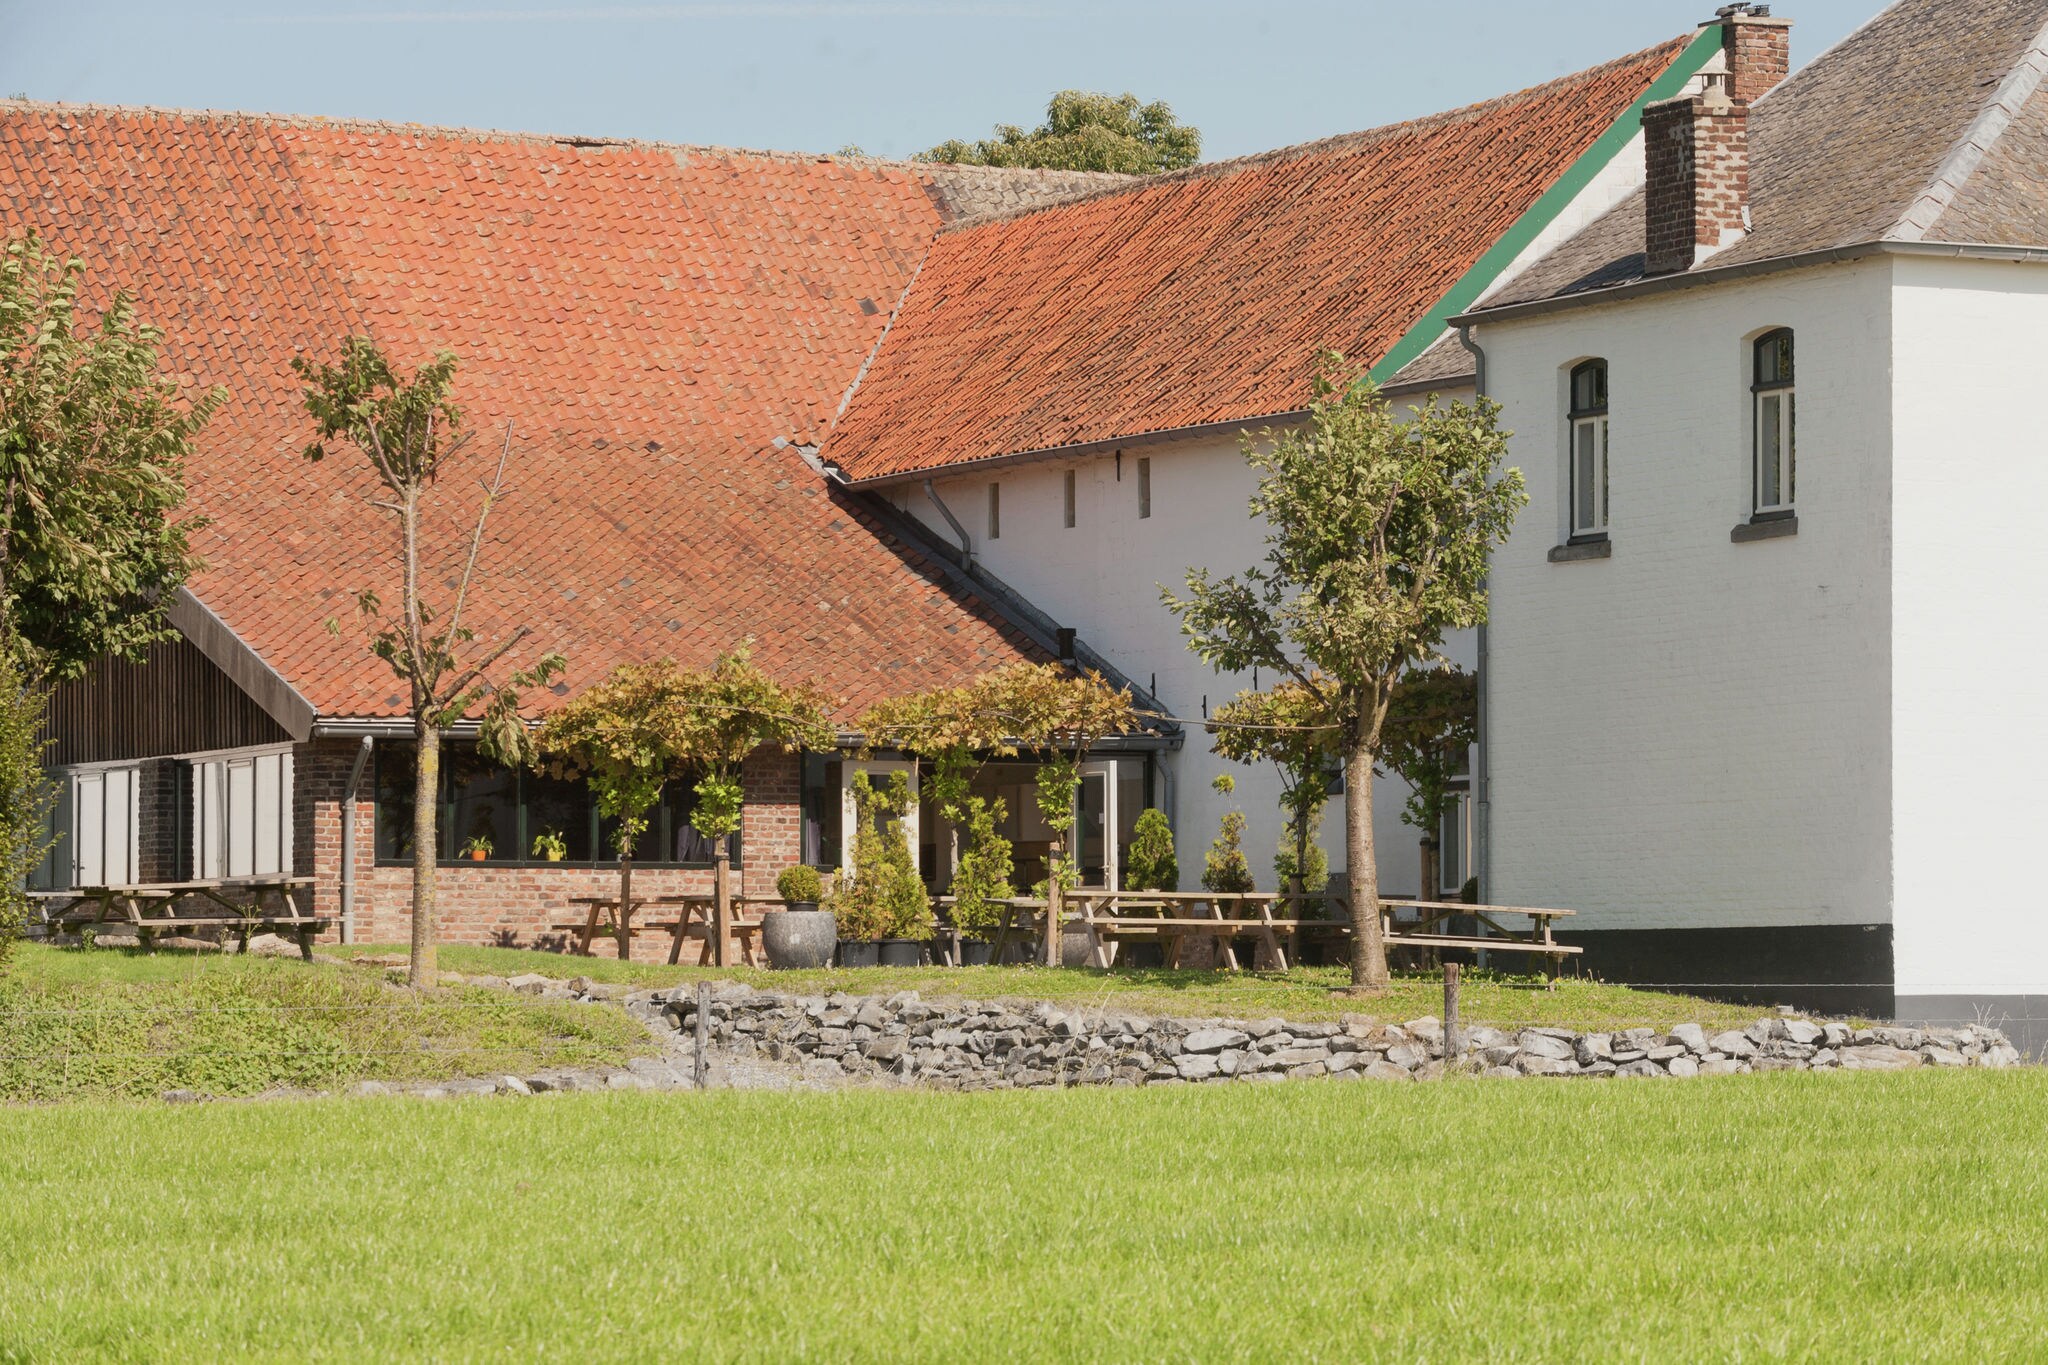 Ferienhaus in Limburg in der Nähe von Wald